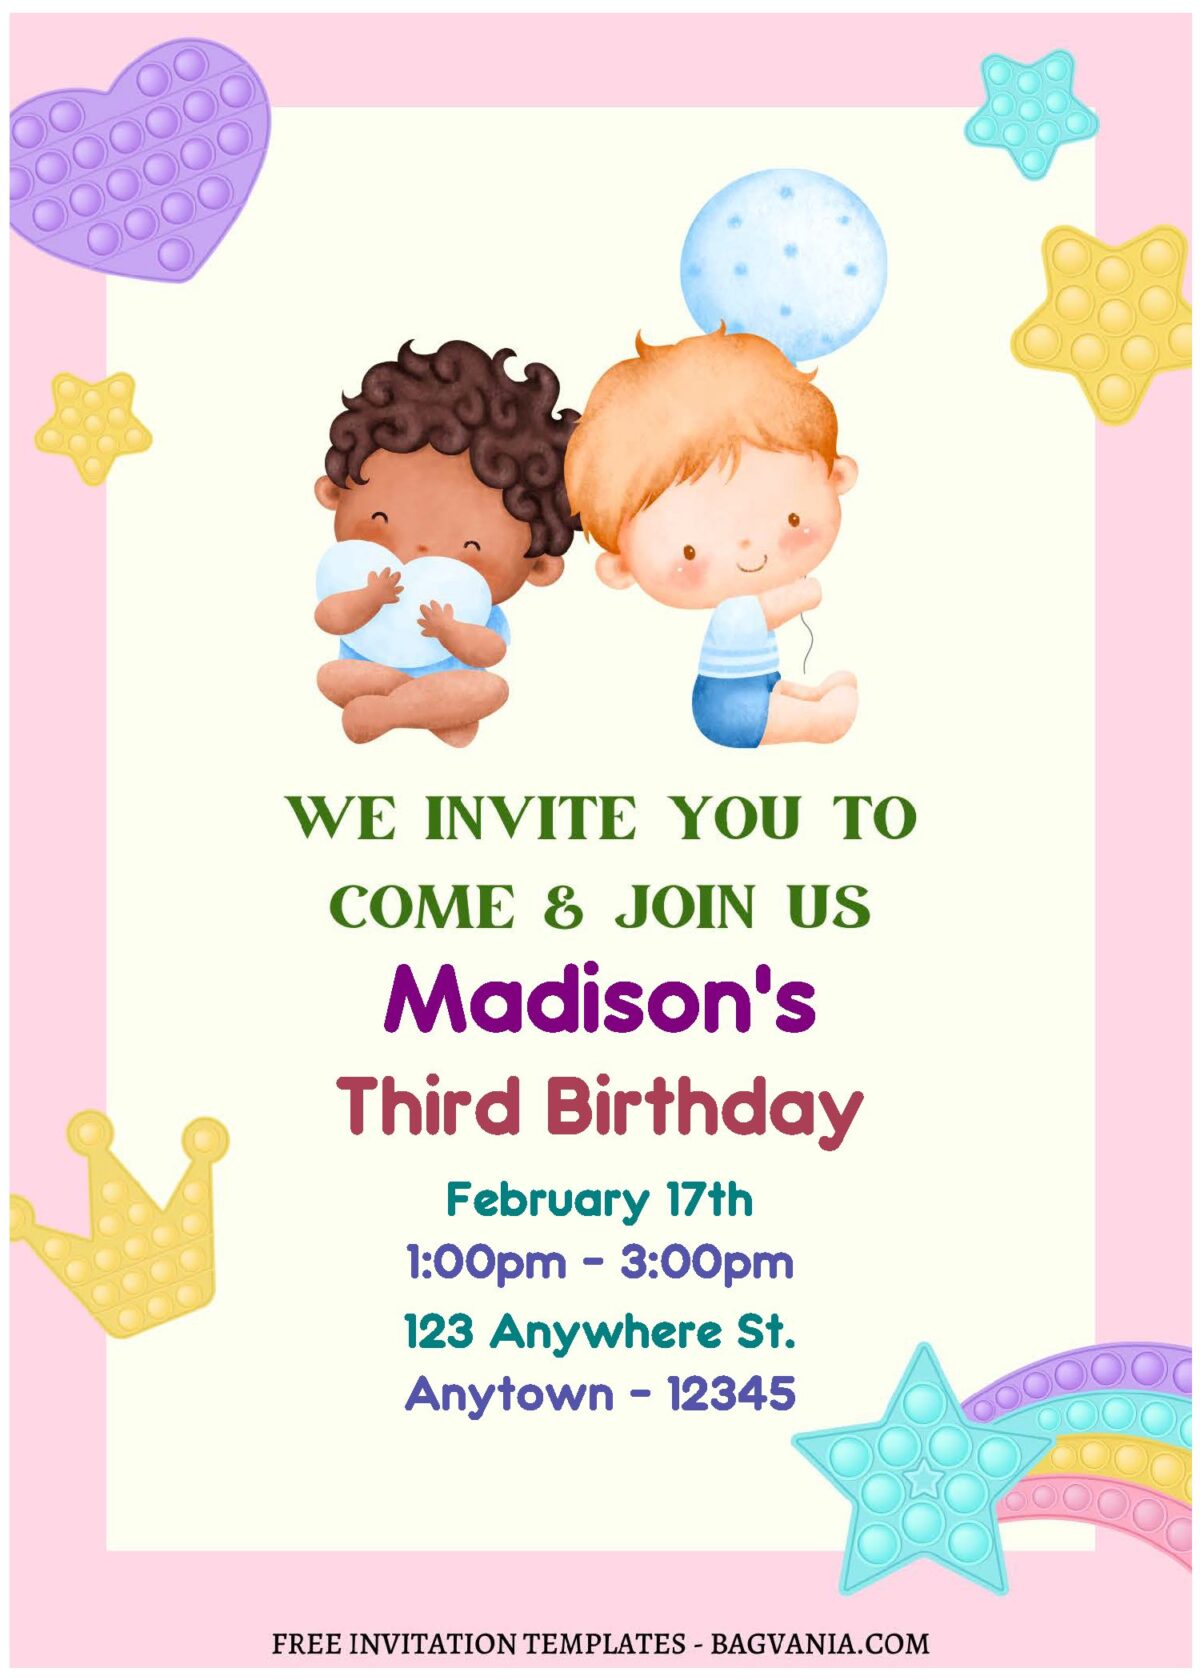 (Free Editable PDF) Colorful Rainbow Nursery Birthday Invitation Templates A